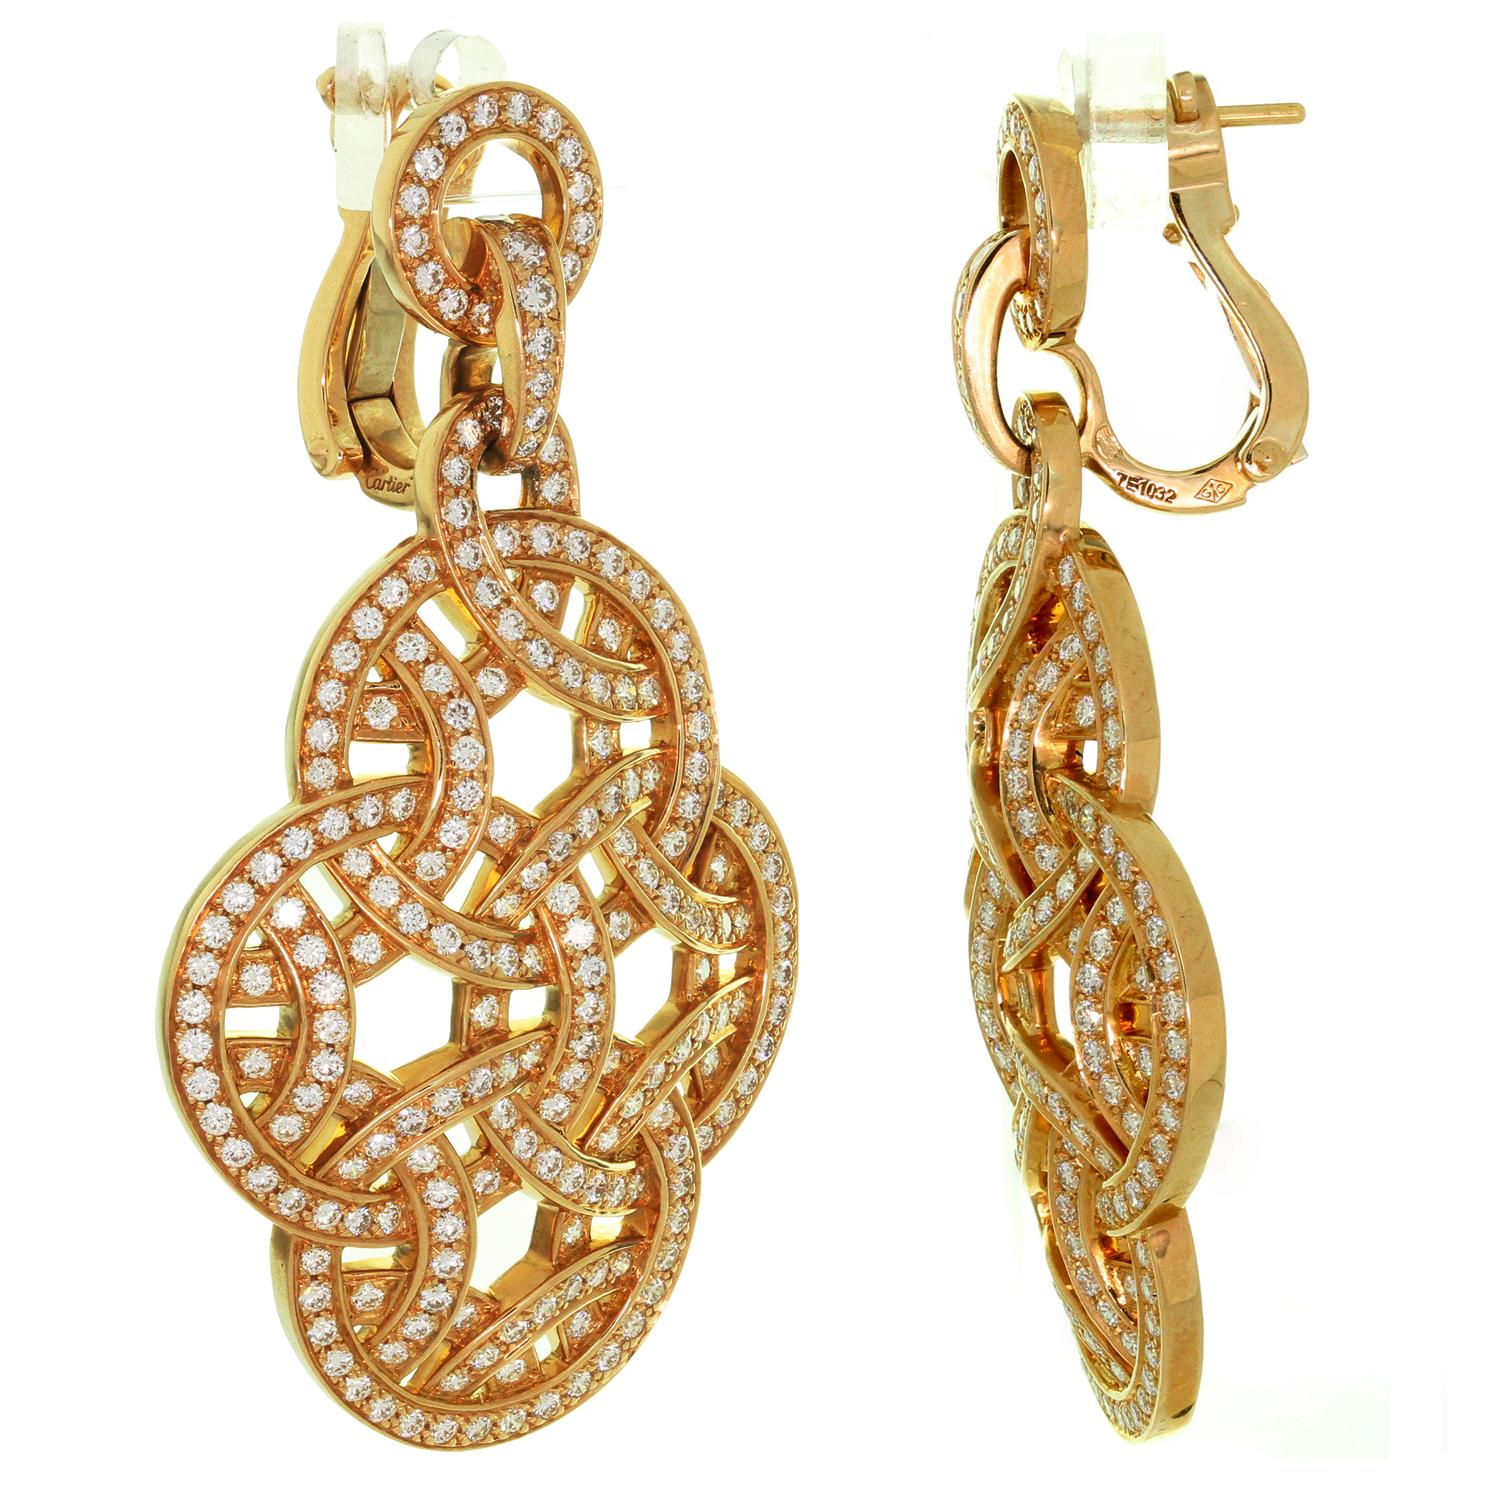 Brilliant Cut Cartier Galanterie Paris Nouvelle Vague Diamond Rose Gold Earrings. Papers